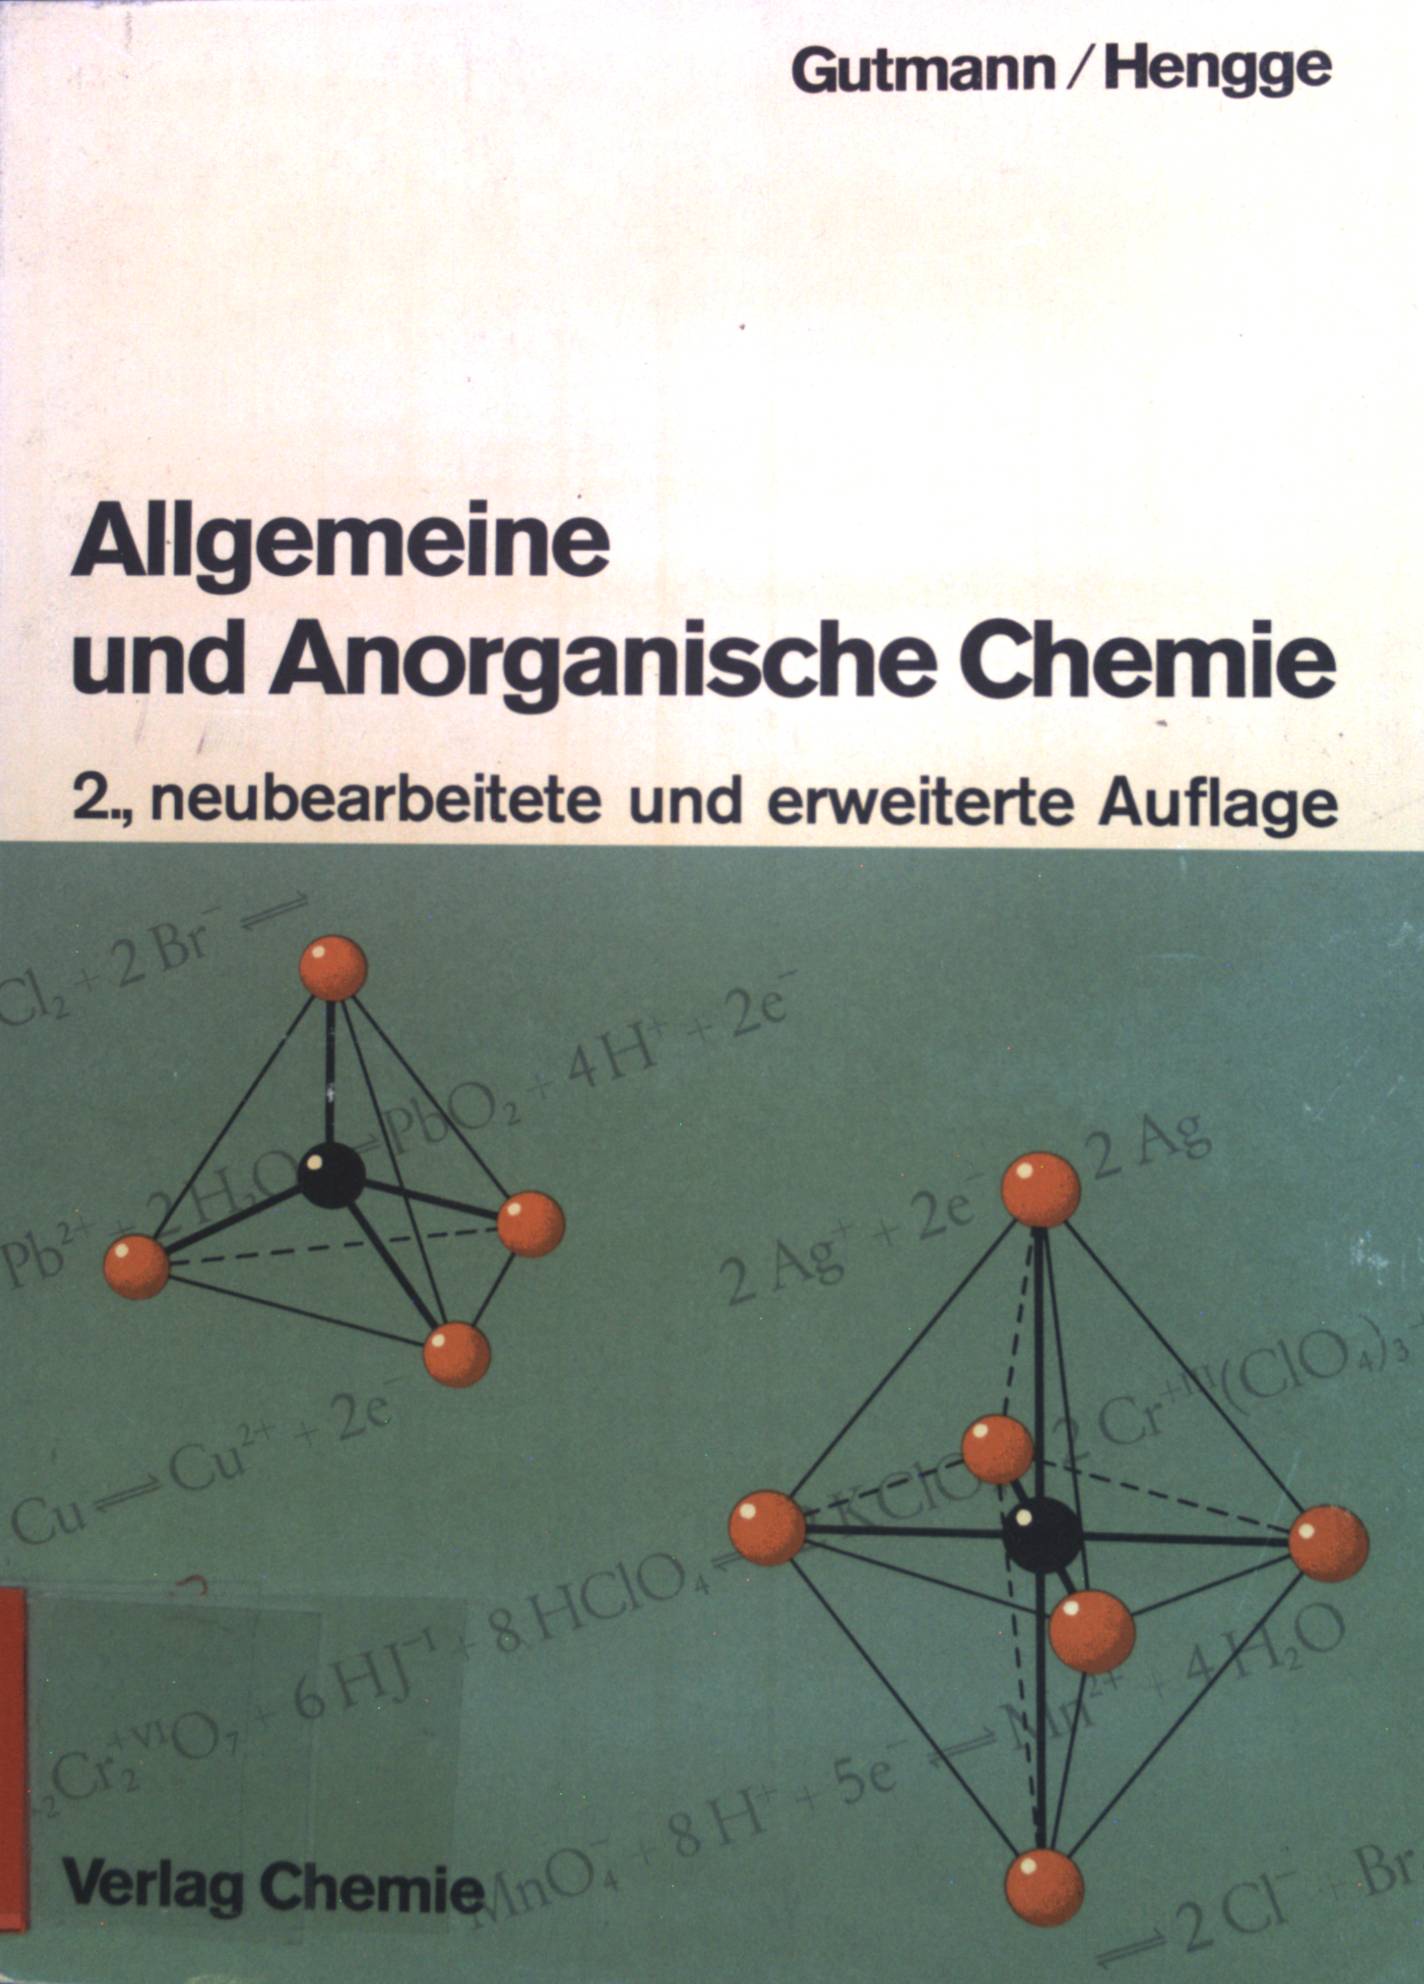 Allgemeine und anorganische Chemie. - Gutmann, Viktor und Edwin Hengge